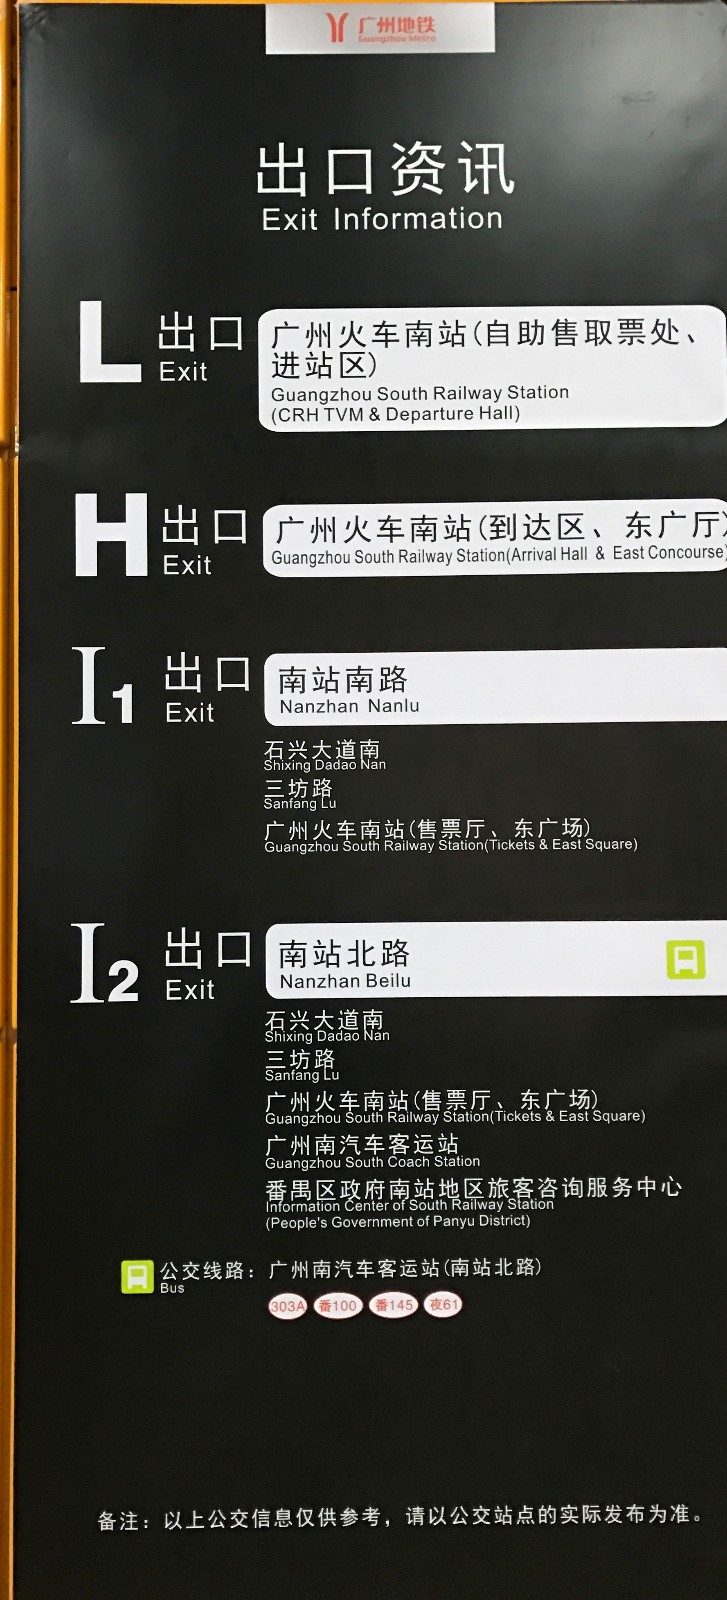 在广州南站怎么坐高铁我的意思是在地铁哪个出口然后到哪里坐高铁（坐地铁从哪个出口到广州南站近）